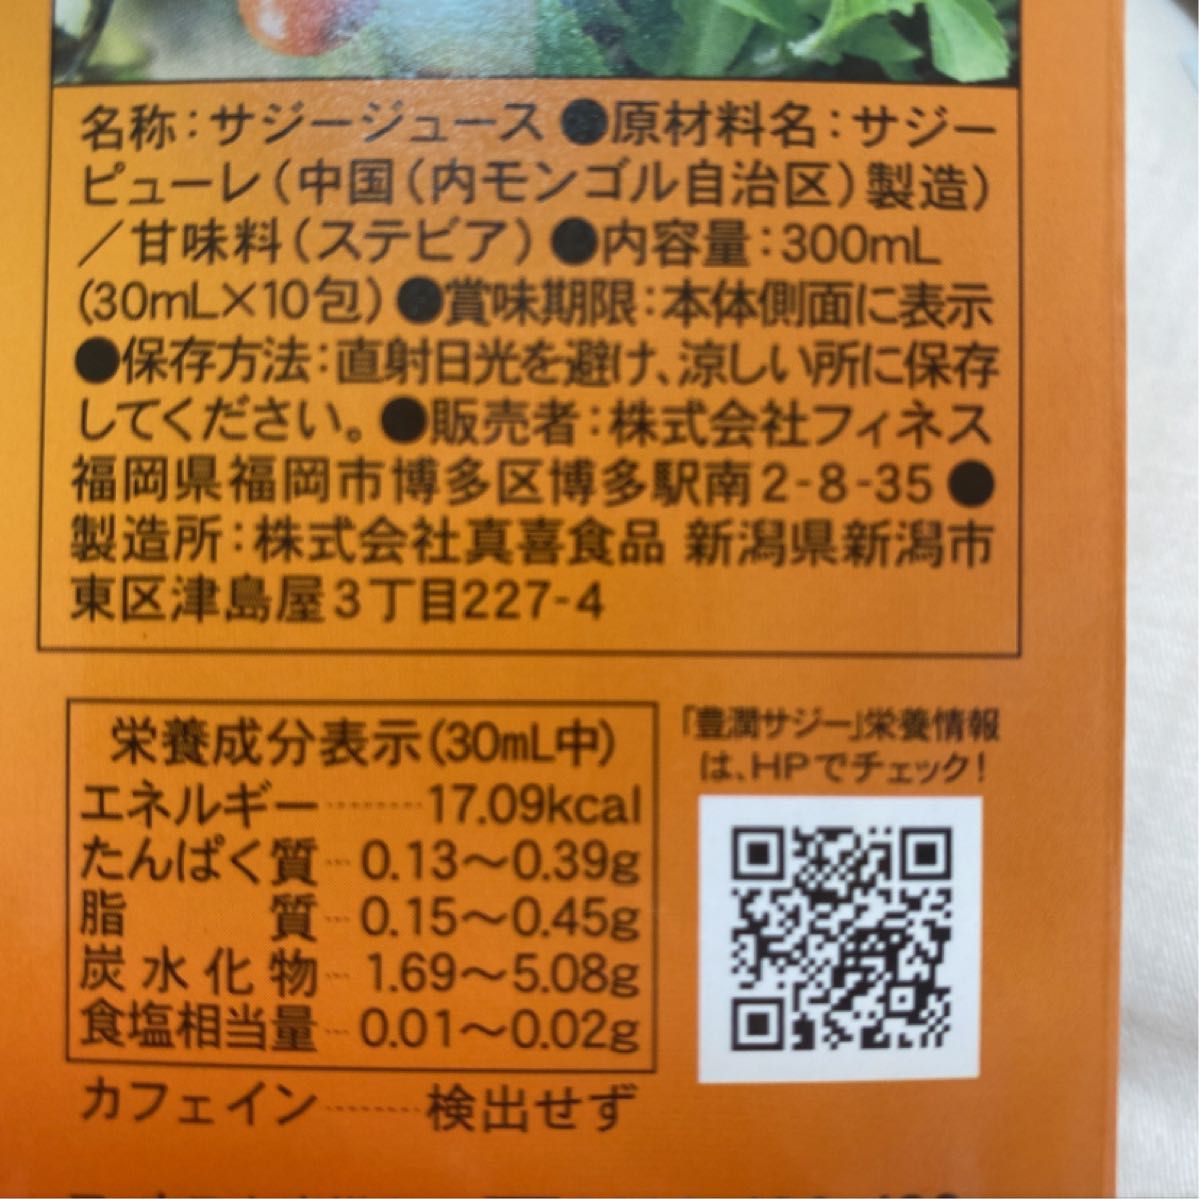 【個包装】豊潤 サジー スティック 30ml×10本